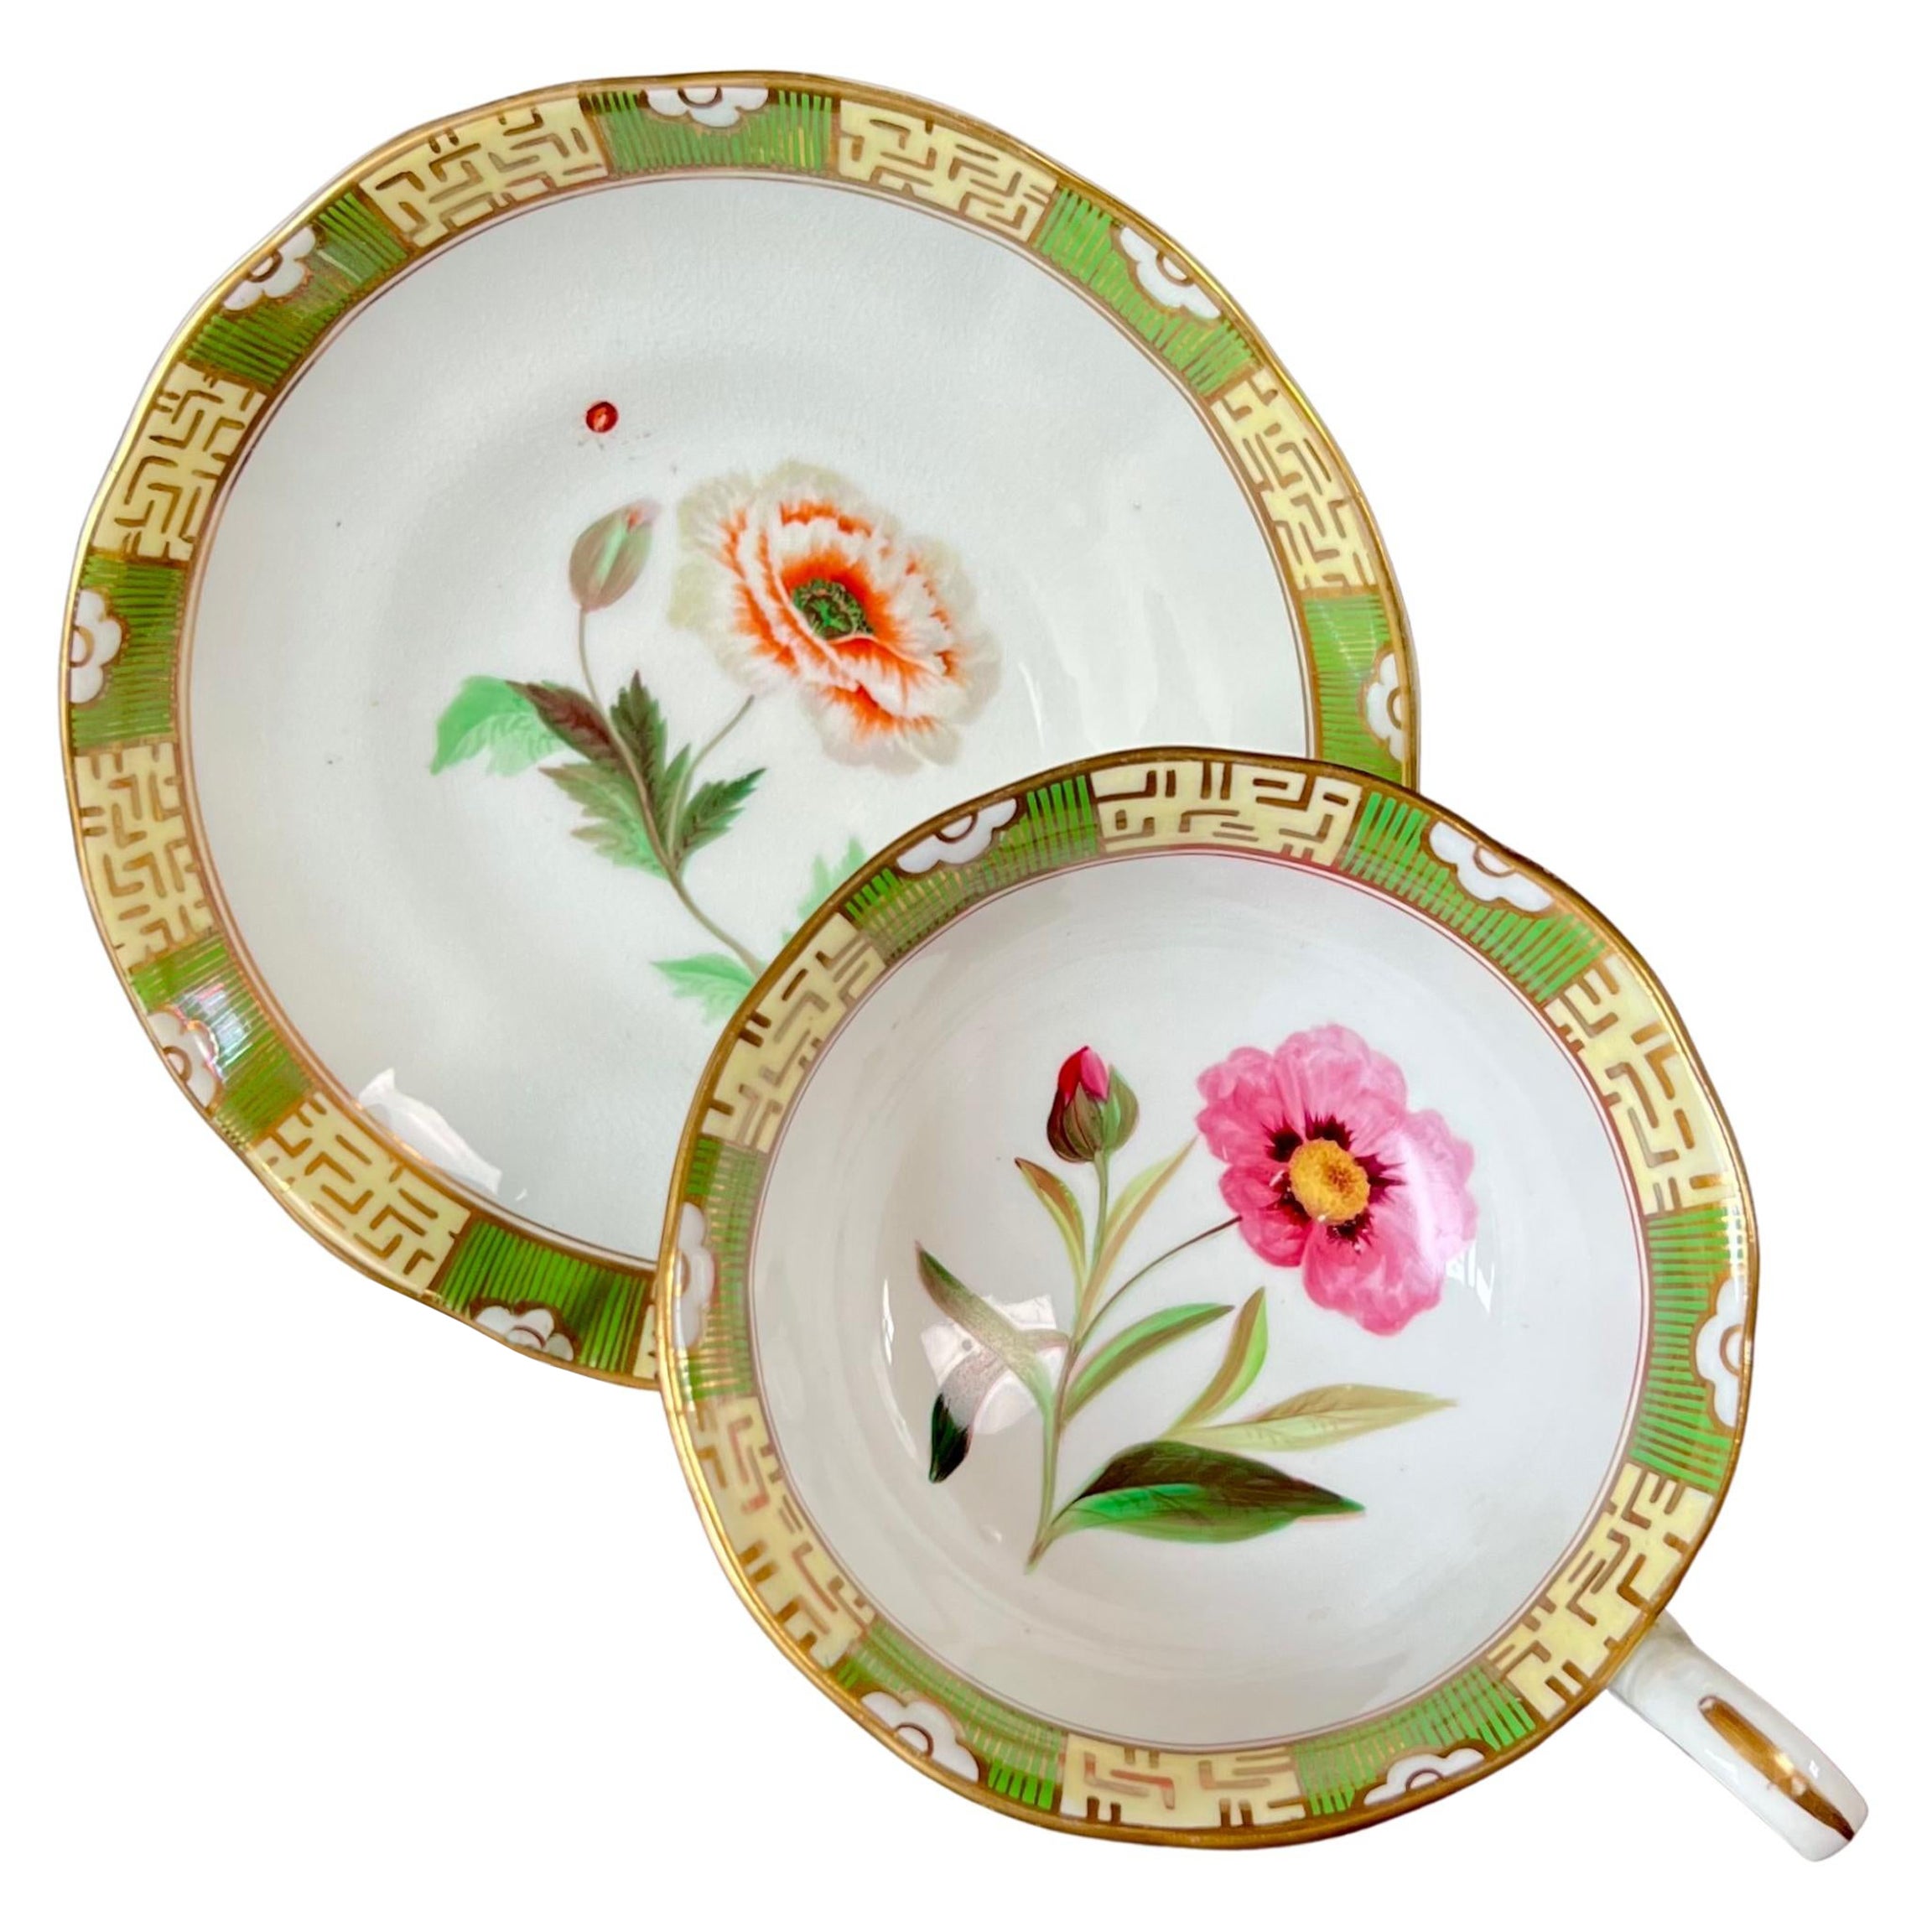 Tasse à thé japonaise Samuel Alcock, bordure verte, fleurs et coccinelle, vers 1843